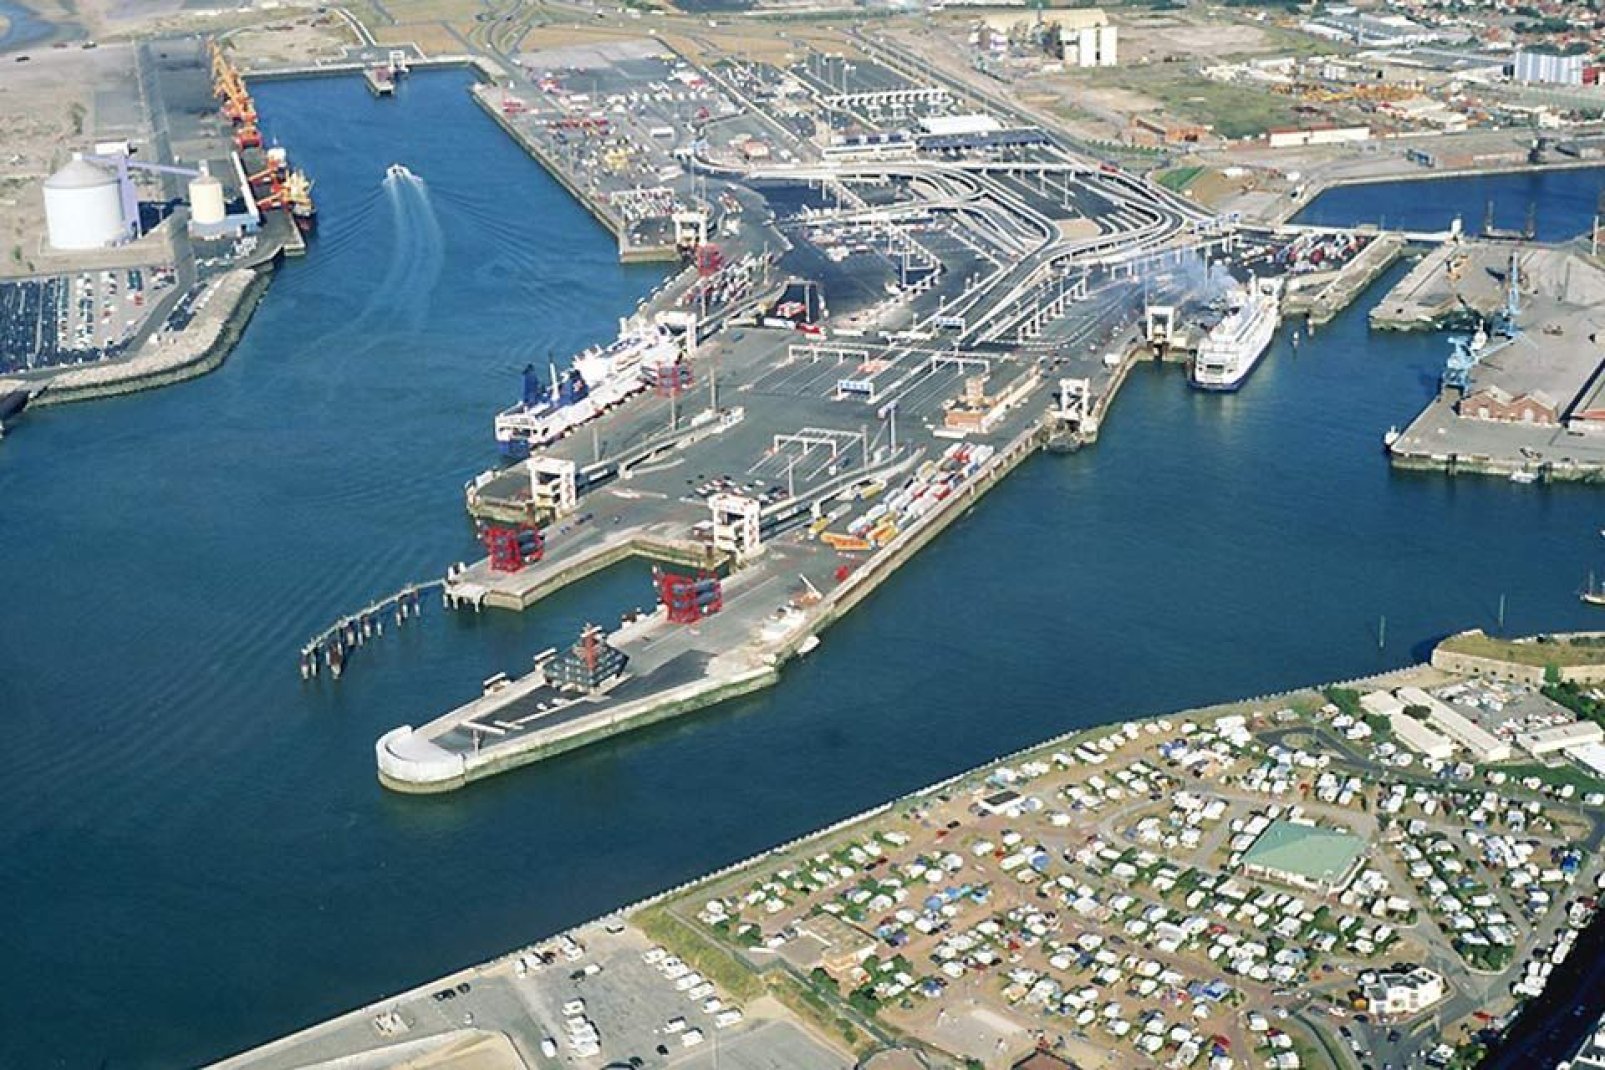 Le port de Calais embarque de nombreux passagers et marchandises vers l'Angleterre, c'est d'ailleurs le premier port de voyageurs en France